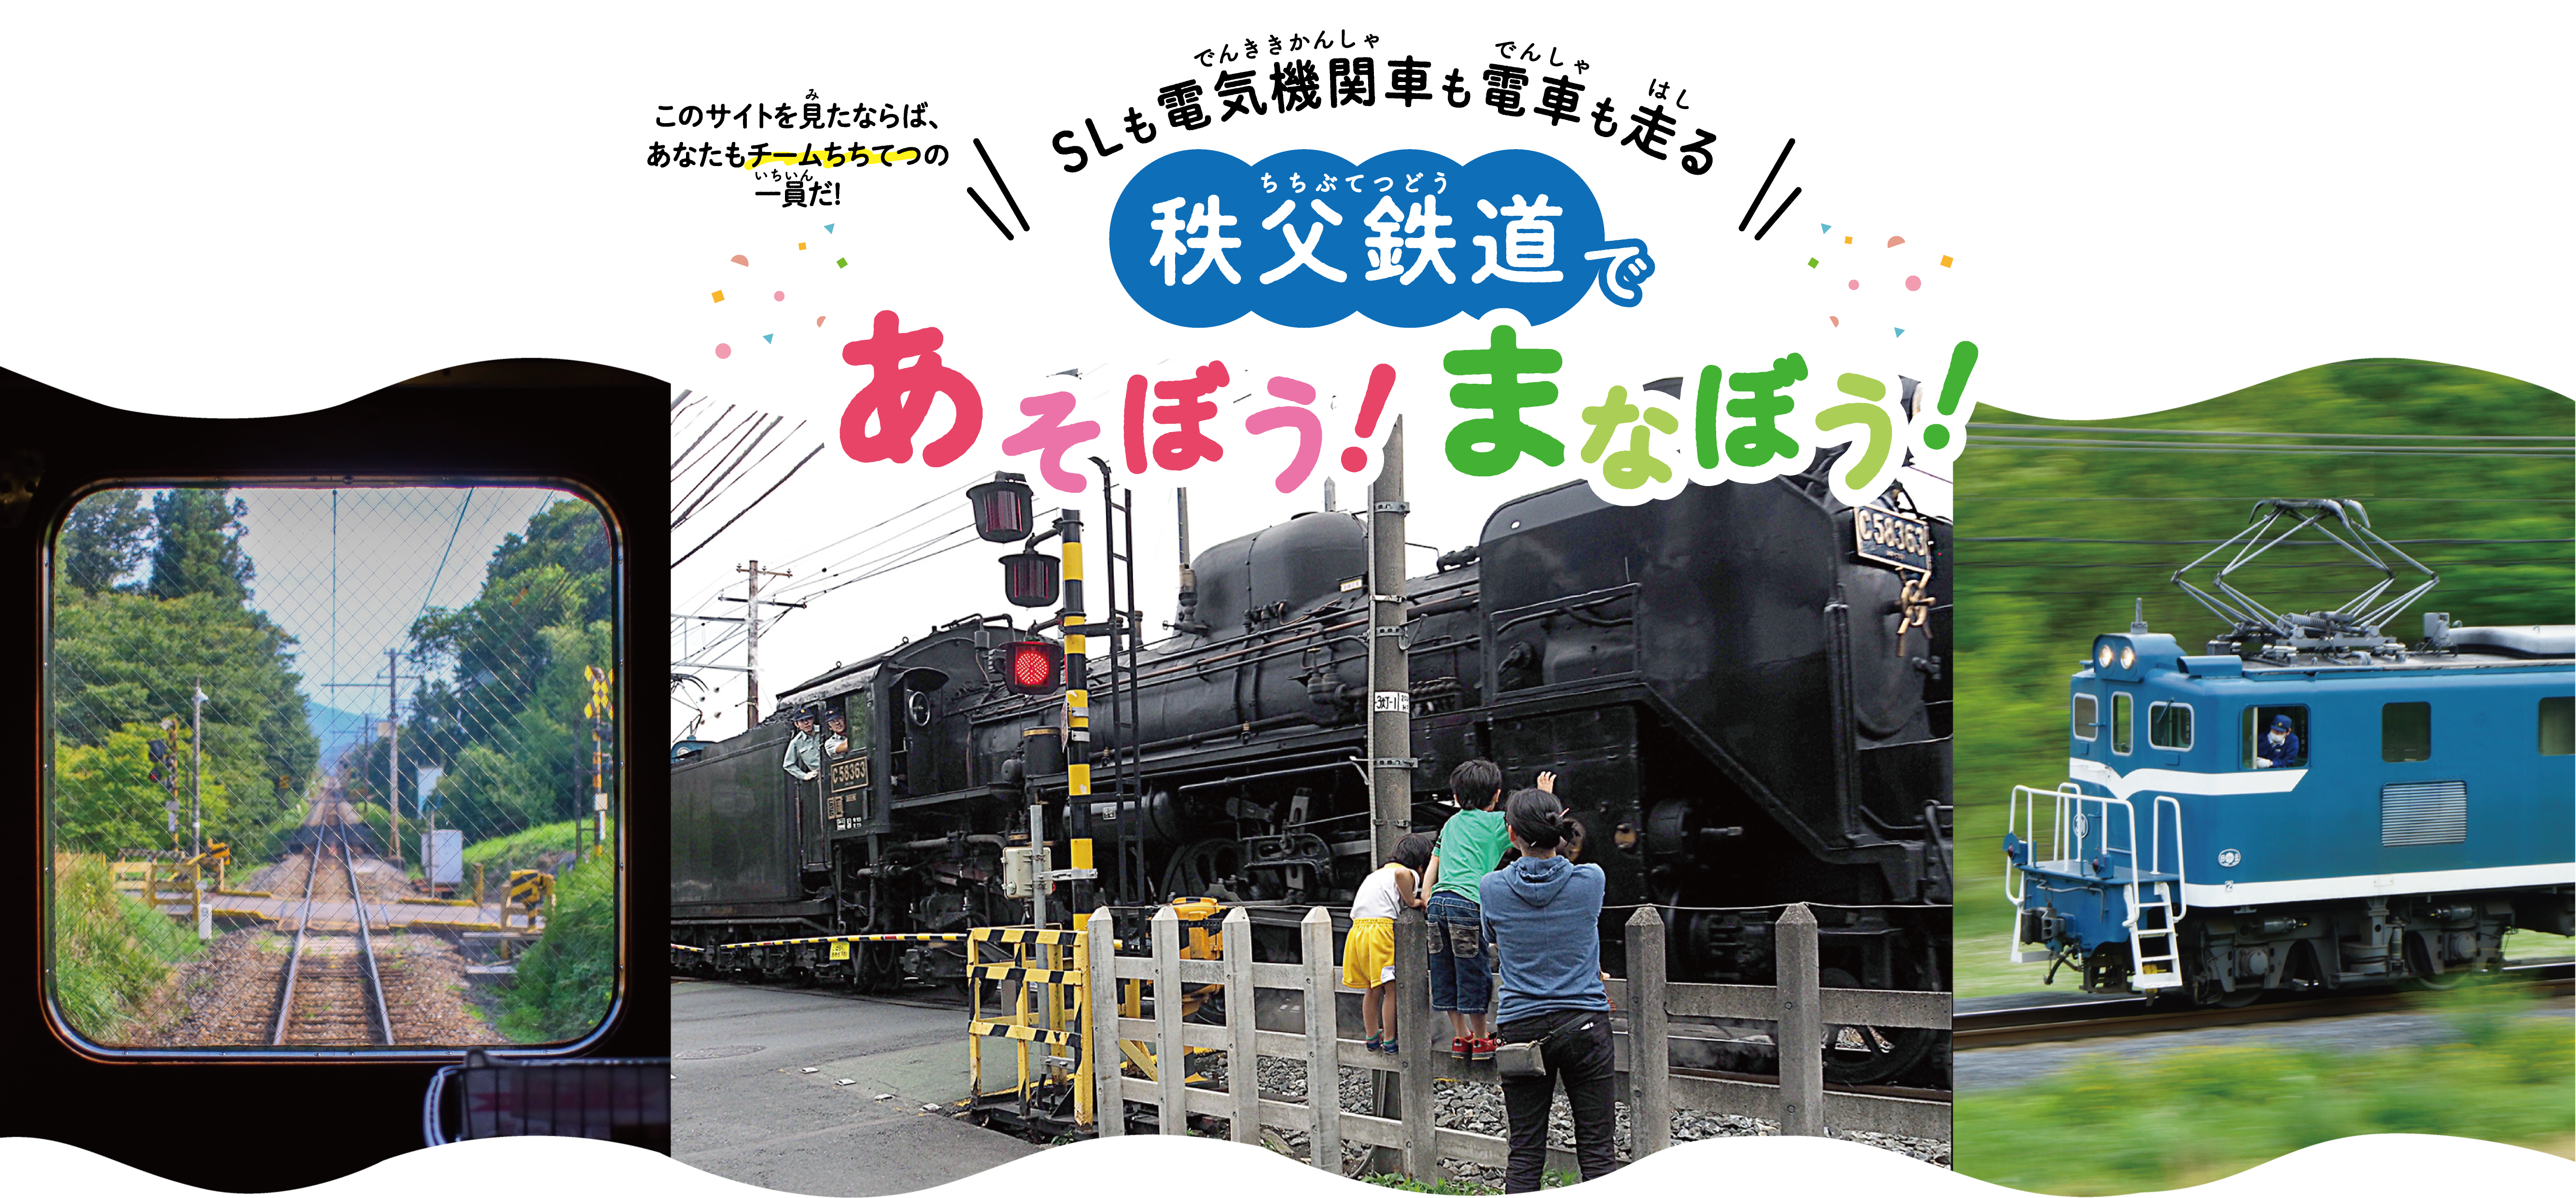 夏休みは秩父鉄道で体験して自由研究をしよう